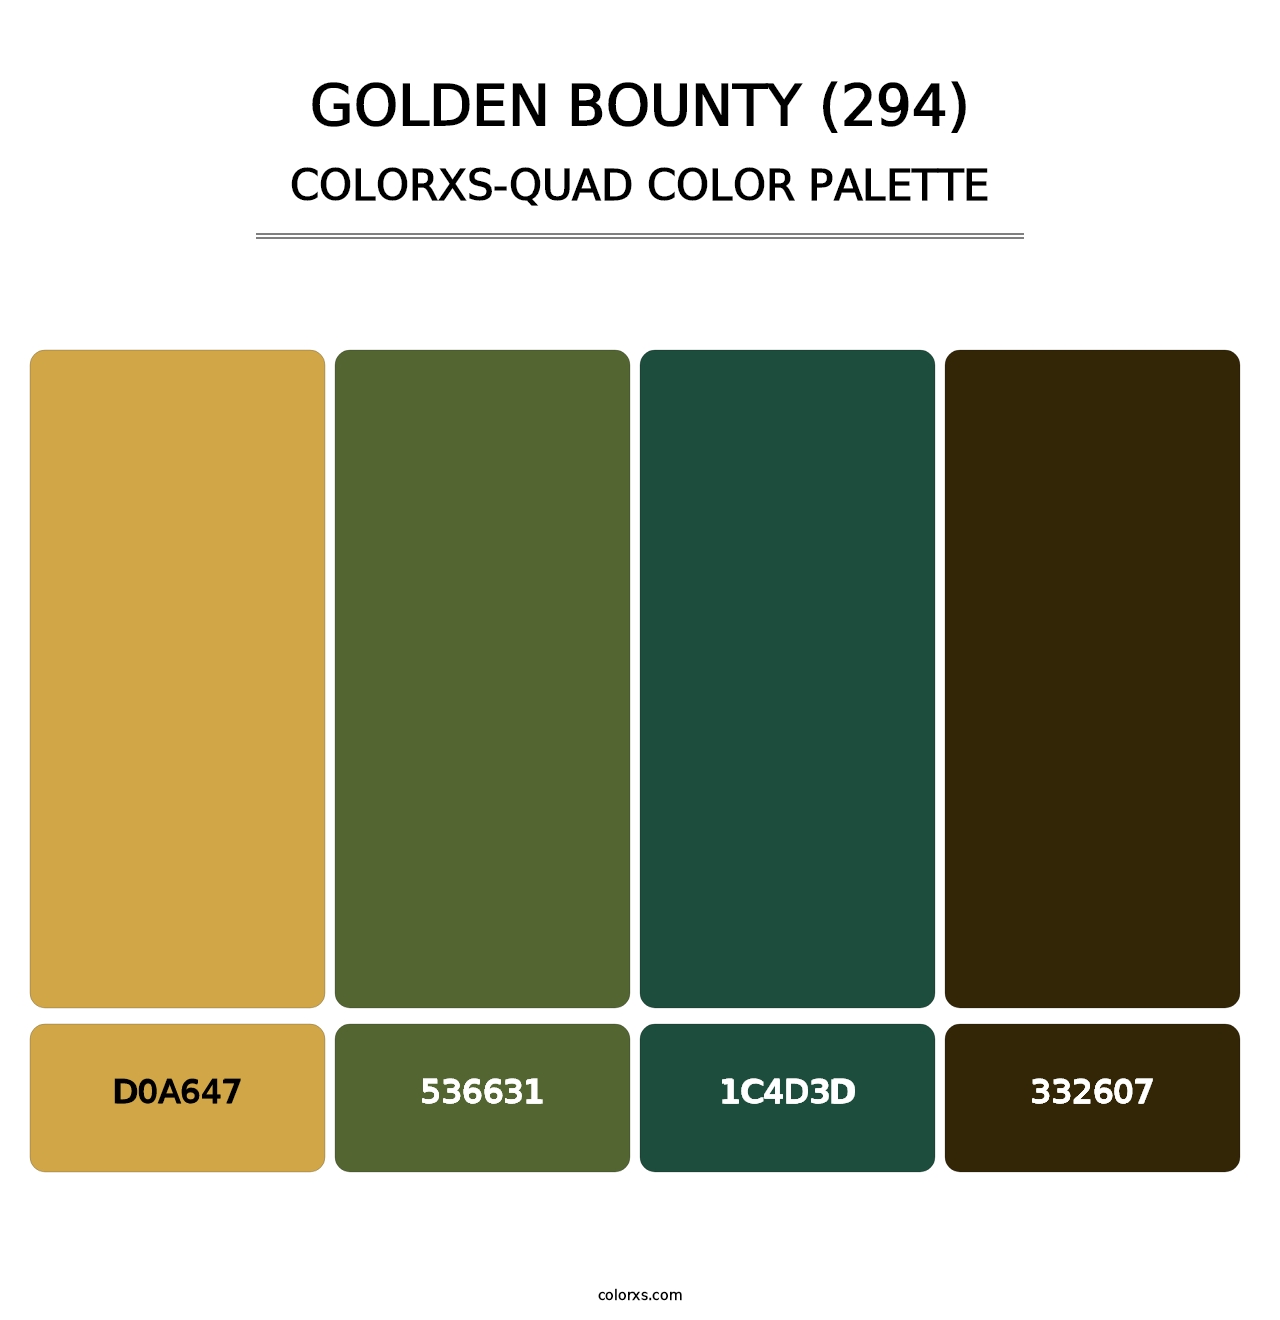 Golden Bounty (294) - Colorxs Quad Palette